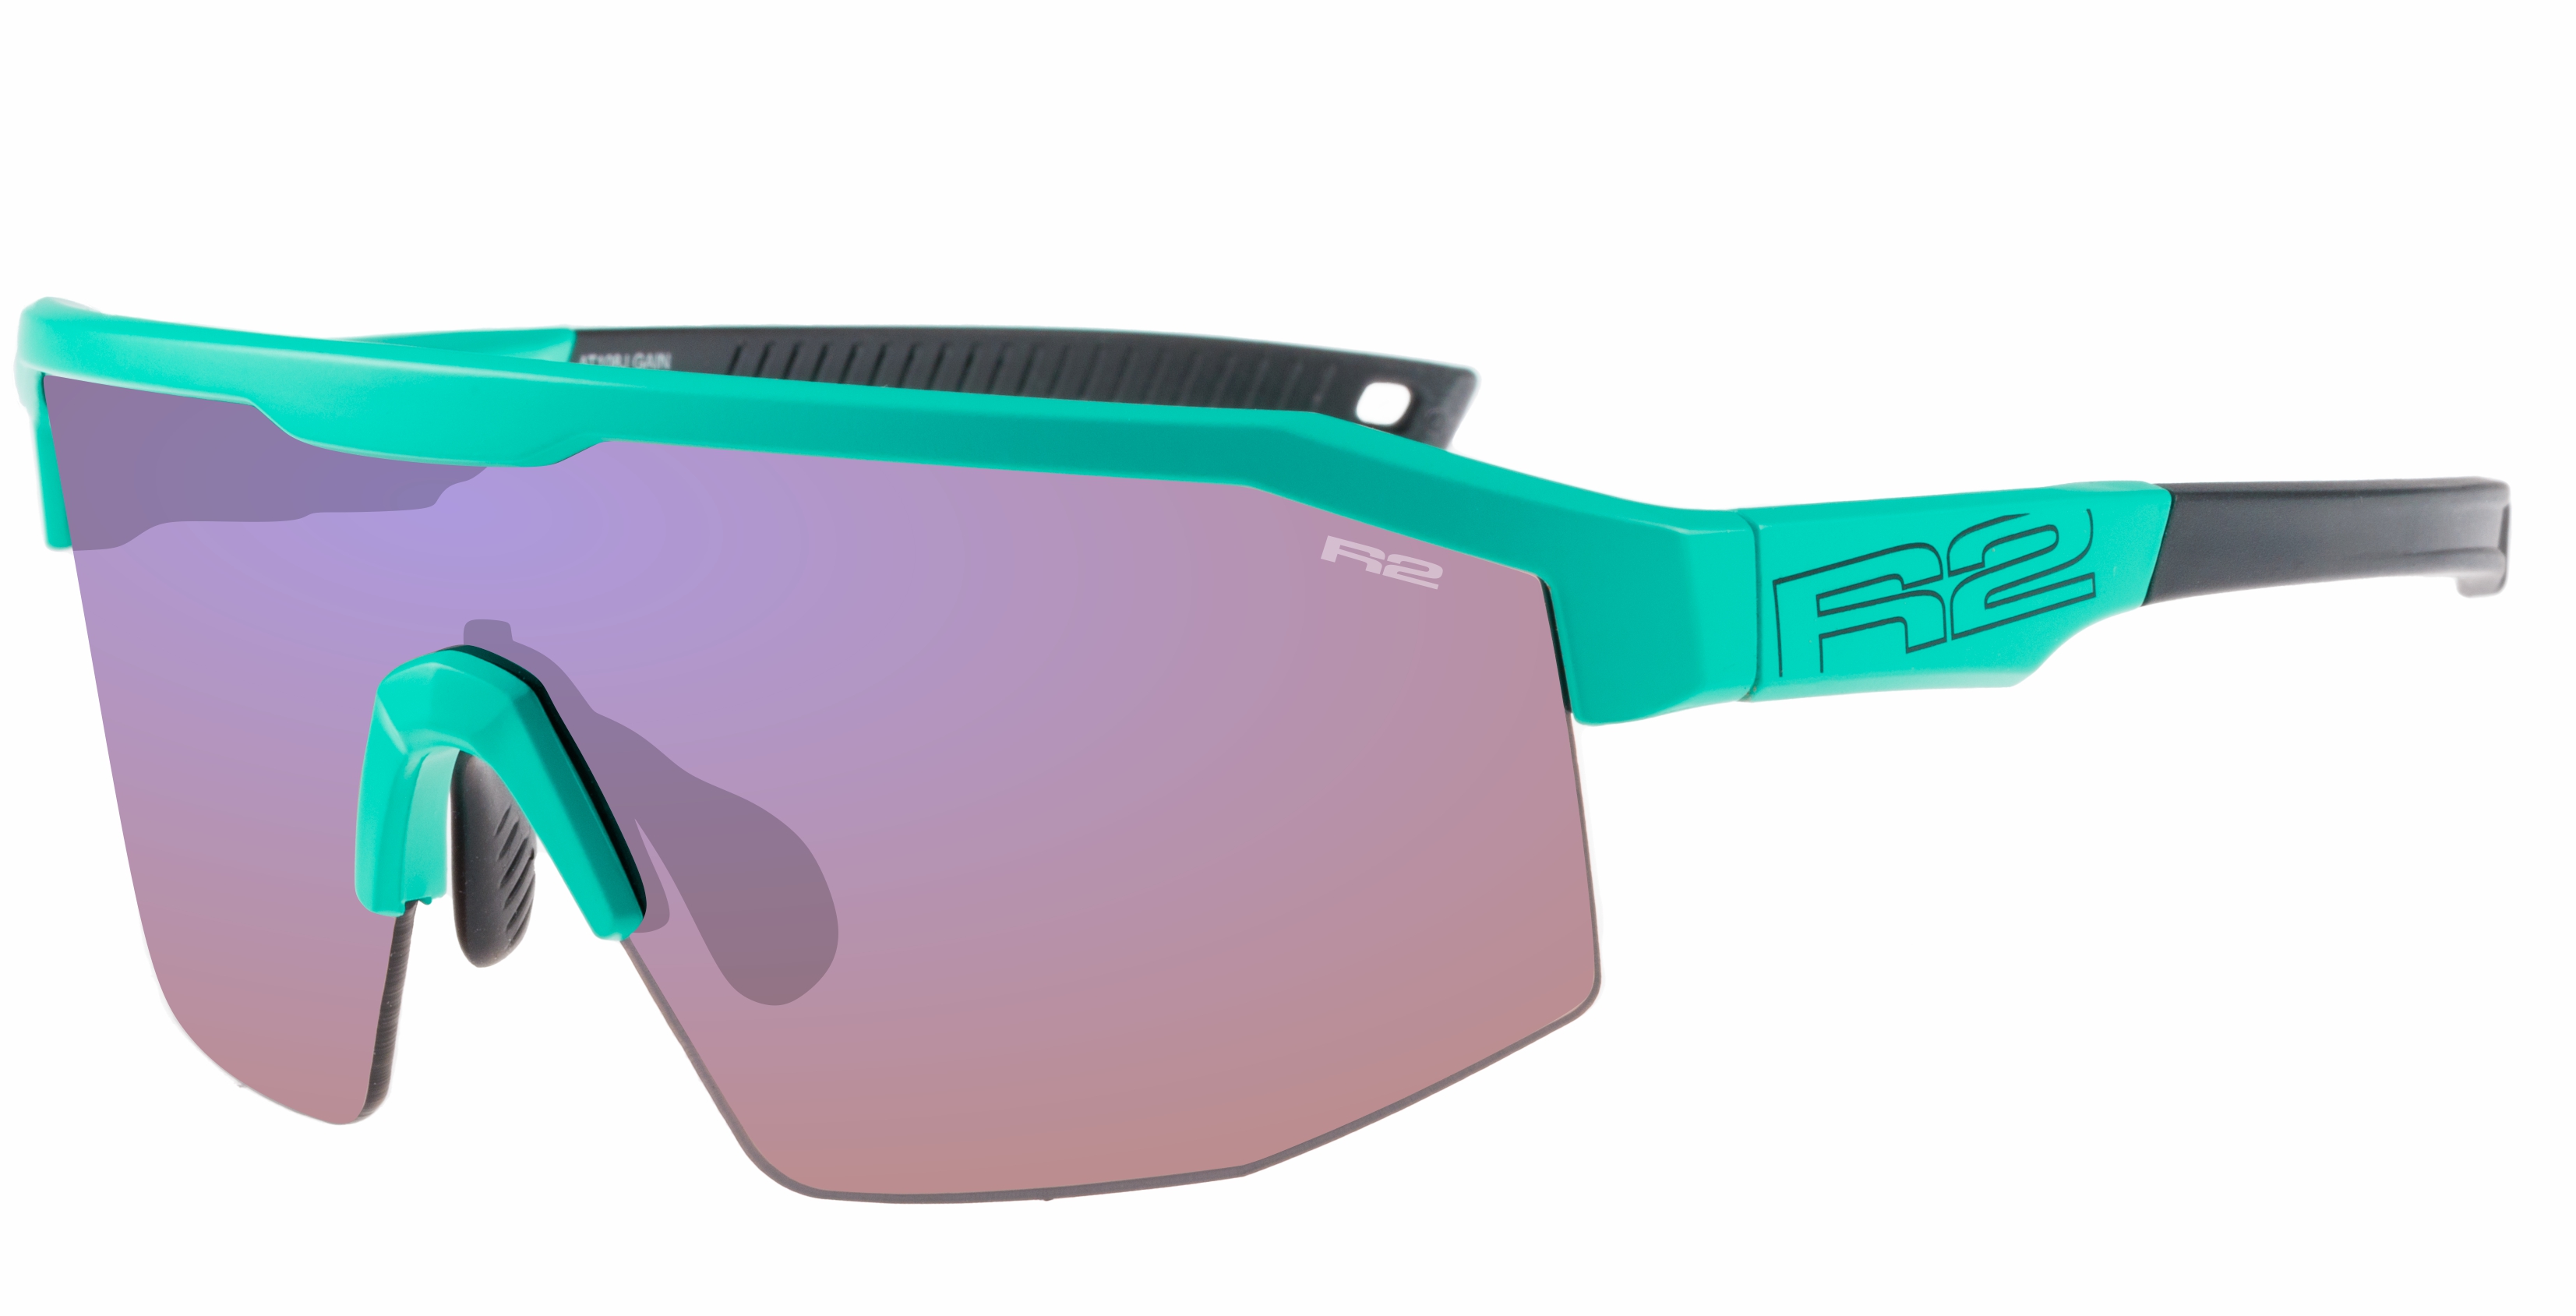 HD sport sunglasses R2 GAIN AT108J standard